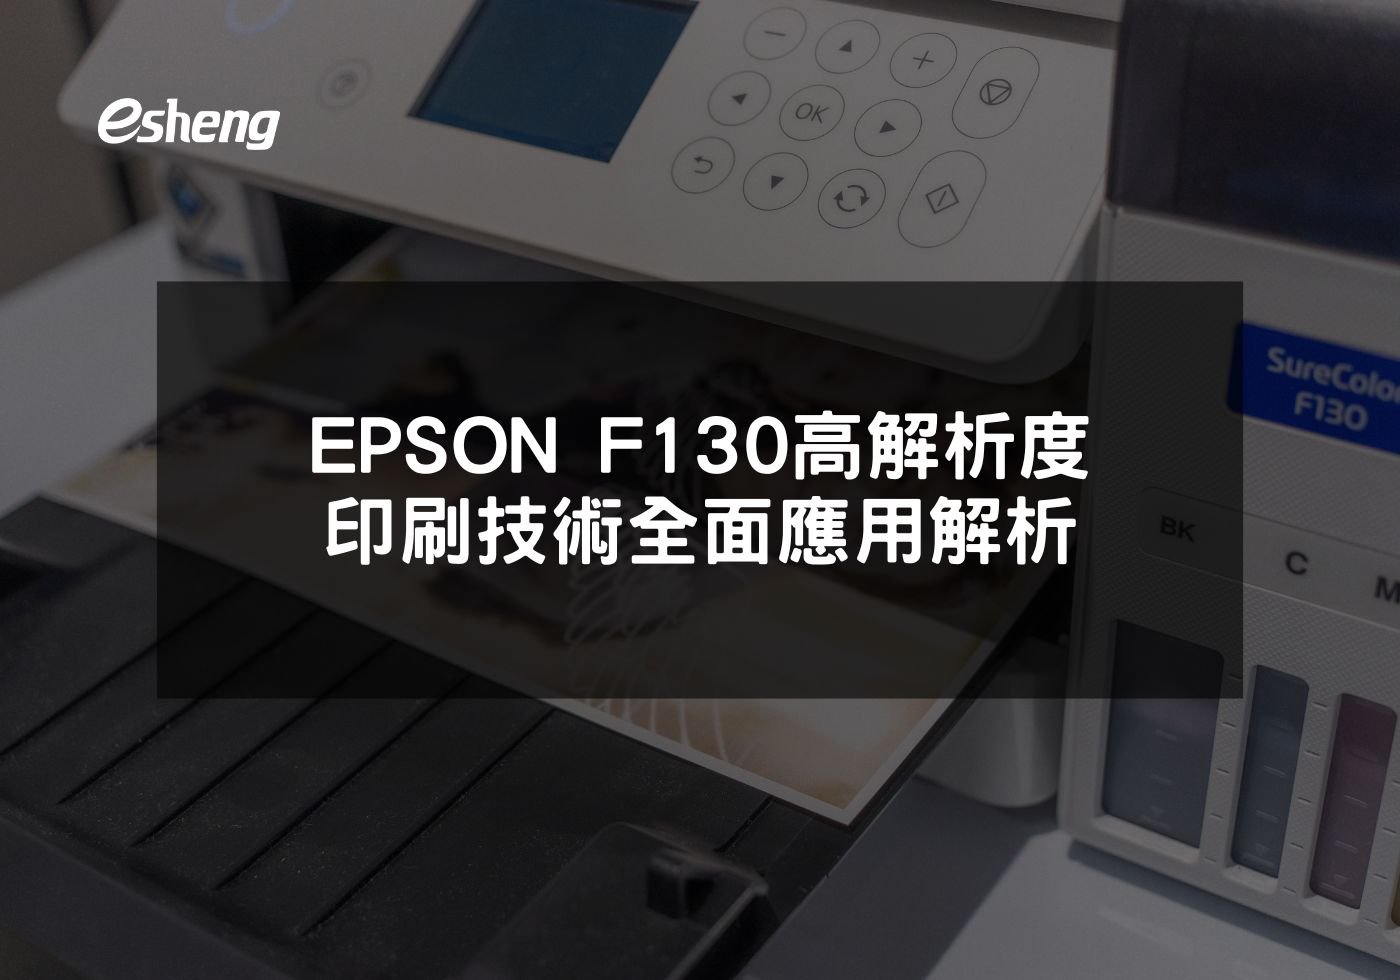 EPSON F130高解析度印刷技術全面應用解析